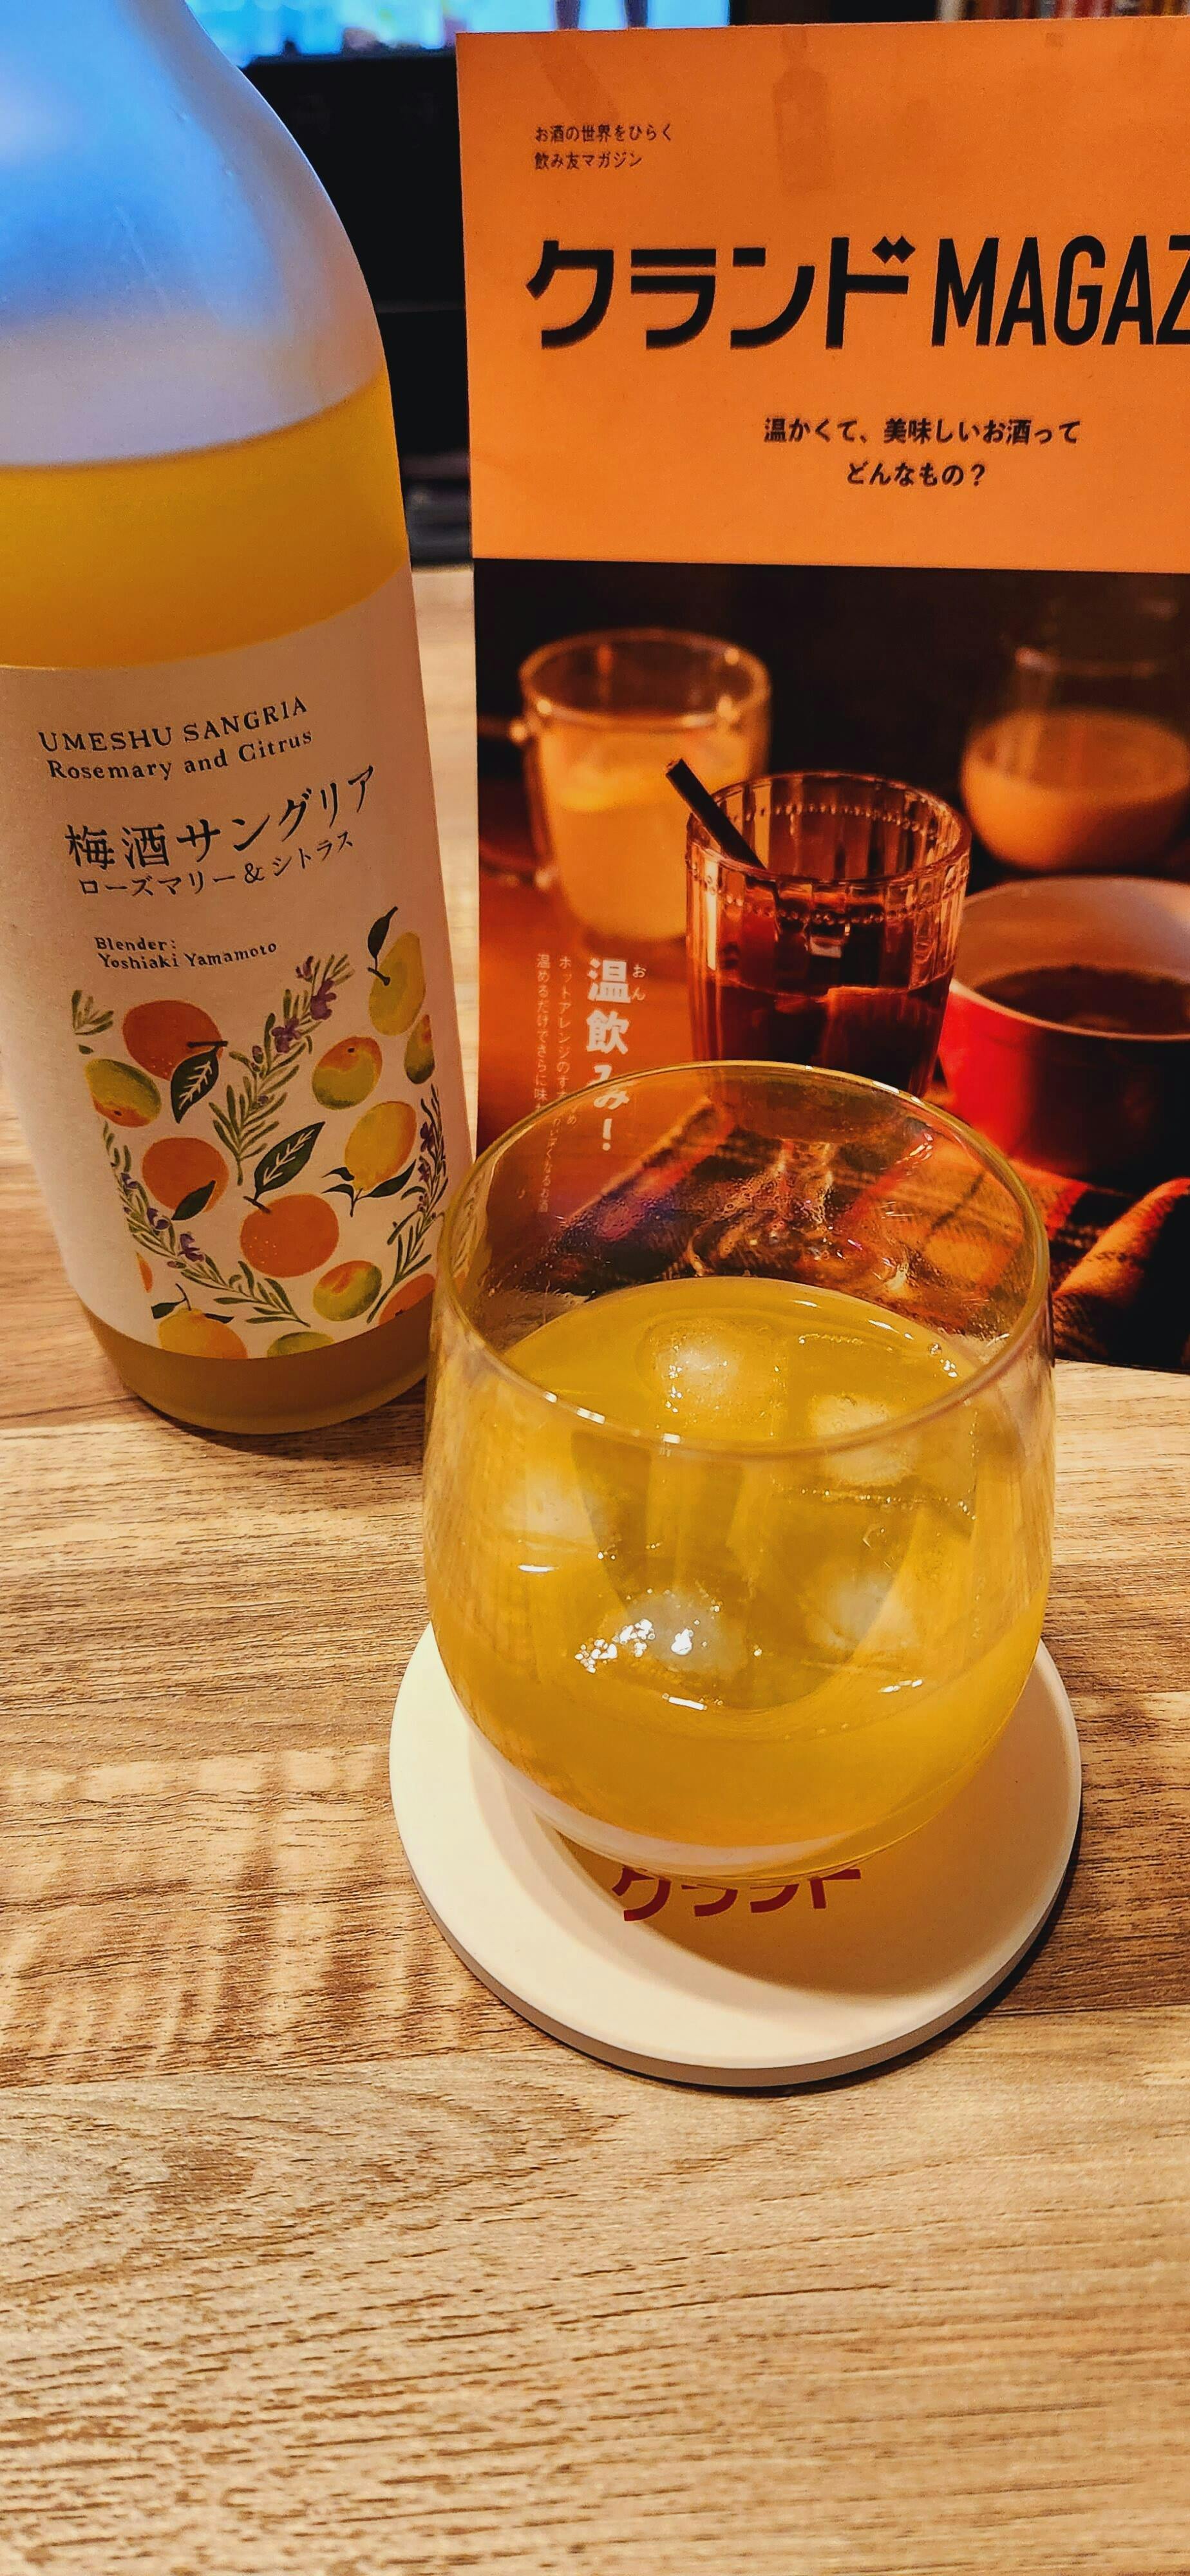 梅酒サングリア ローズマリー&シトラス | 和歌山県の梅酒 | 酒・日本酒